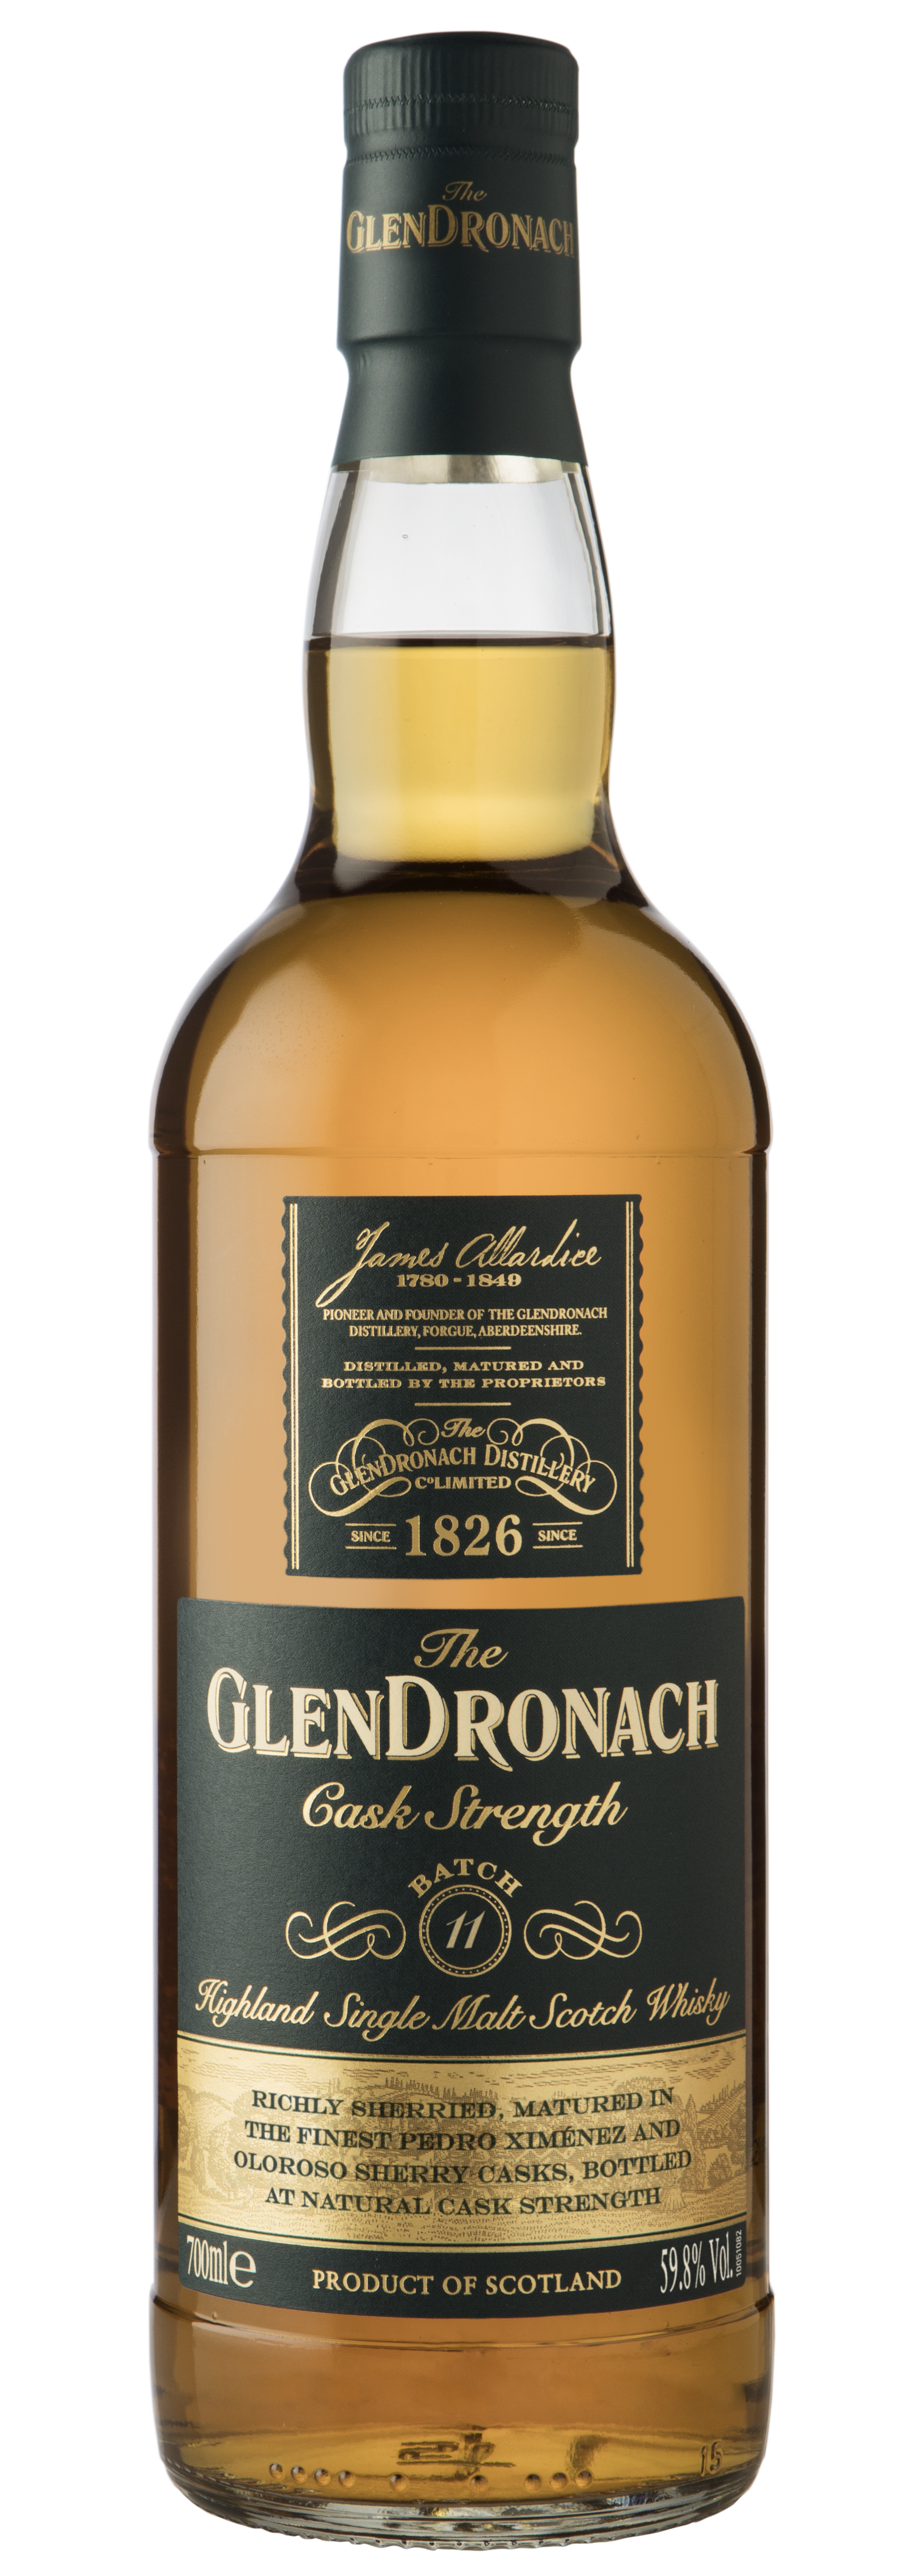 The GlenDronach CASK STRENGTH BATCH 11 bottle